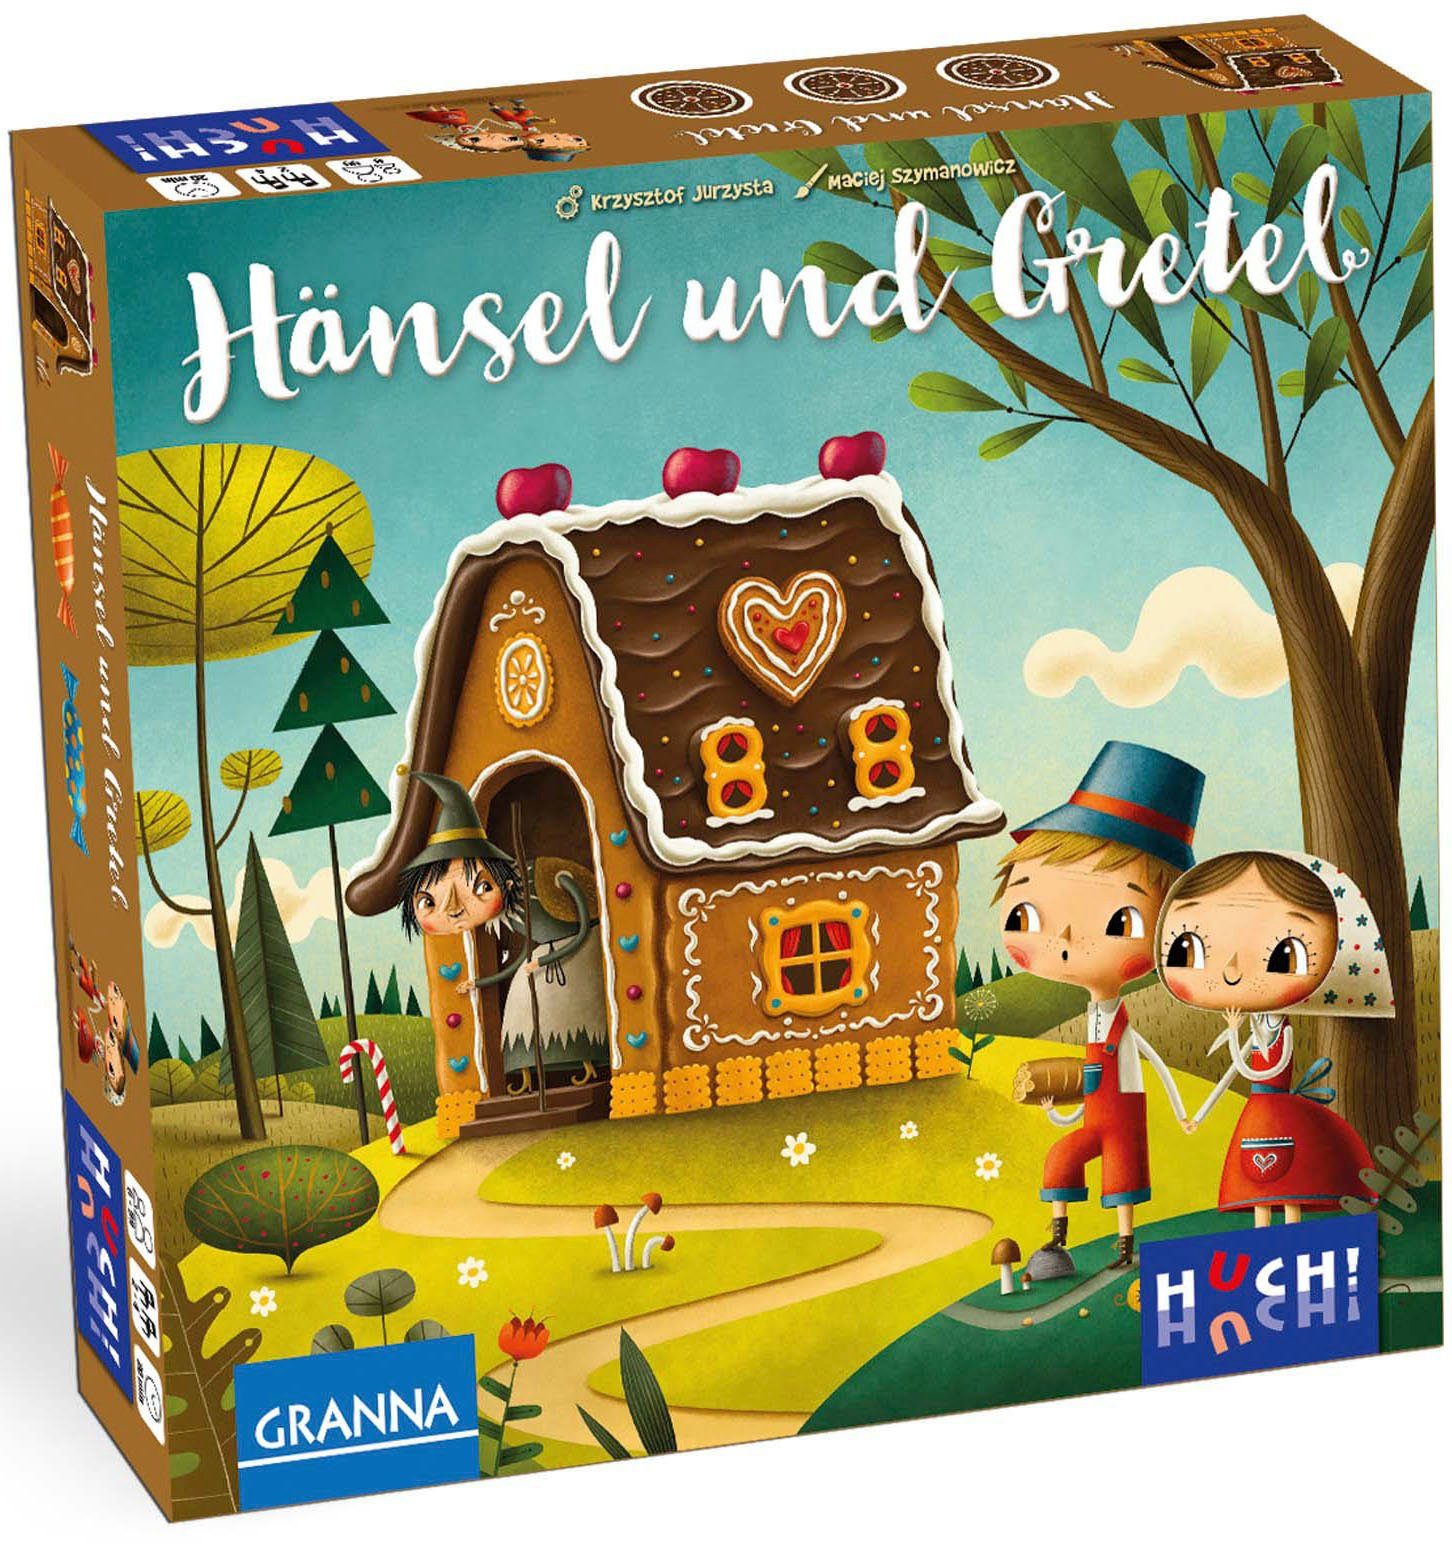 Spiel, Europe in Kinderspiel Gretel, Hänsel Huch! & Made